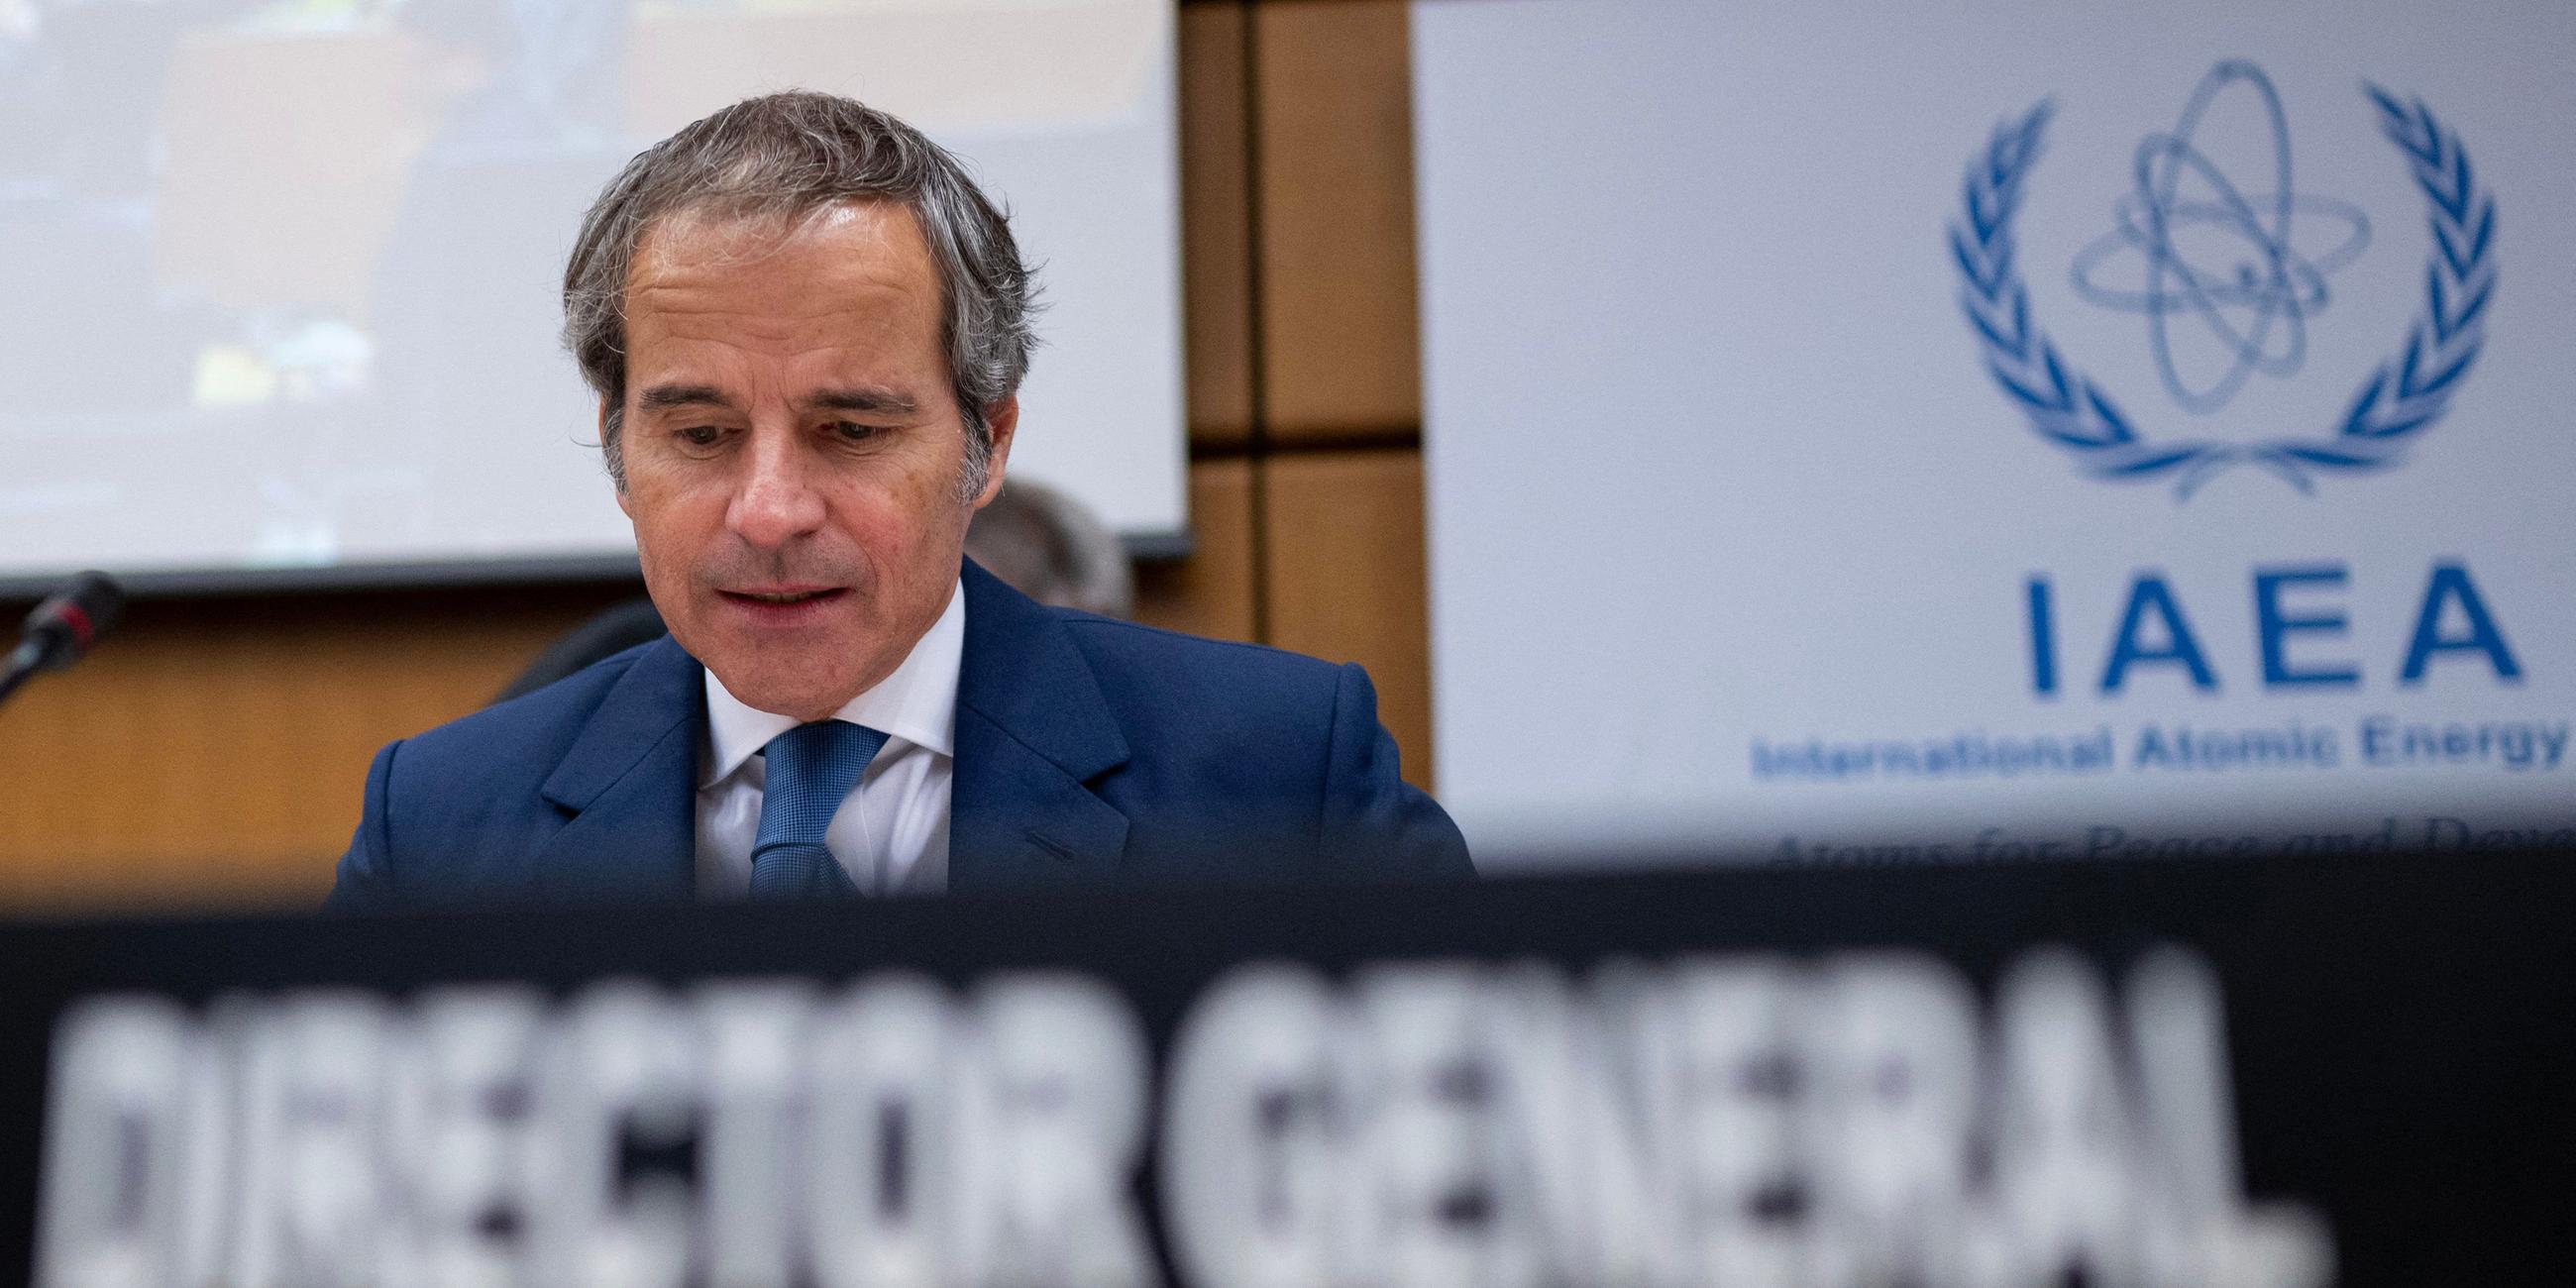 Österreich, Wien: Der Generaldirektor der Internationalen Atomenergie-Organisation (IAEA), Rafael Grossi, nimmt an der Sitzung des Gouverneursrats der IAEO am Hauptsitz der Organisation teil